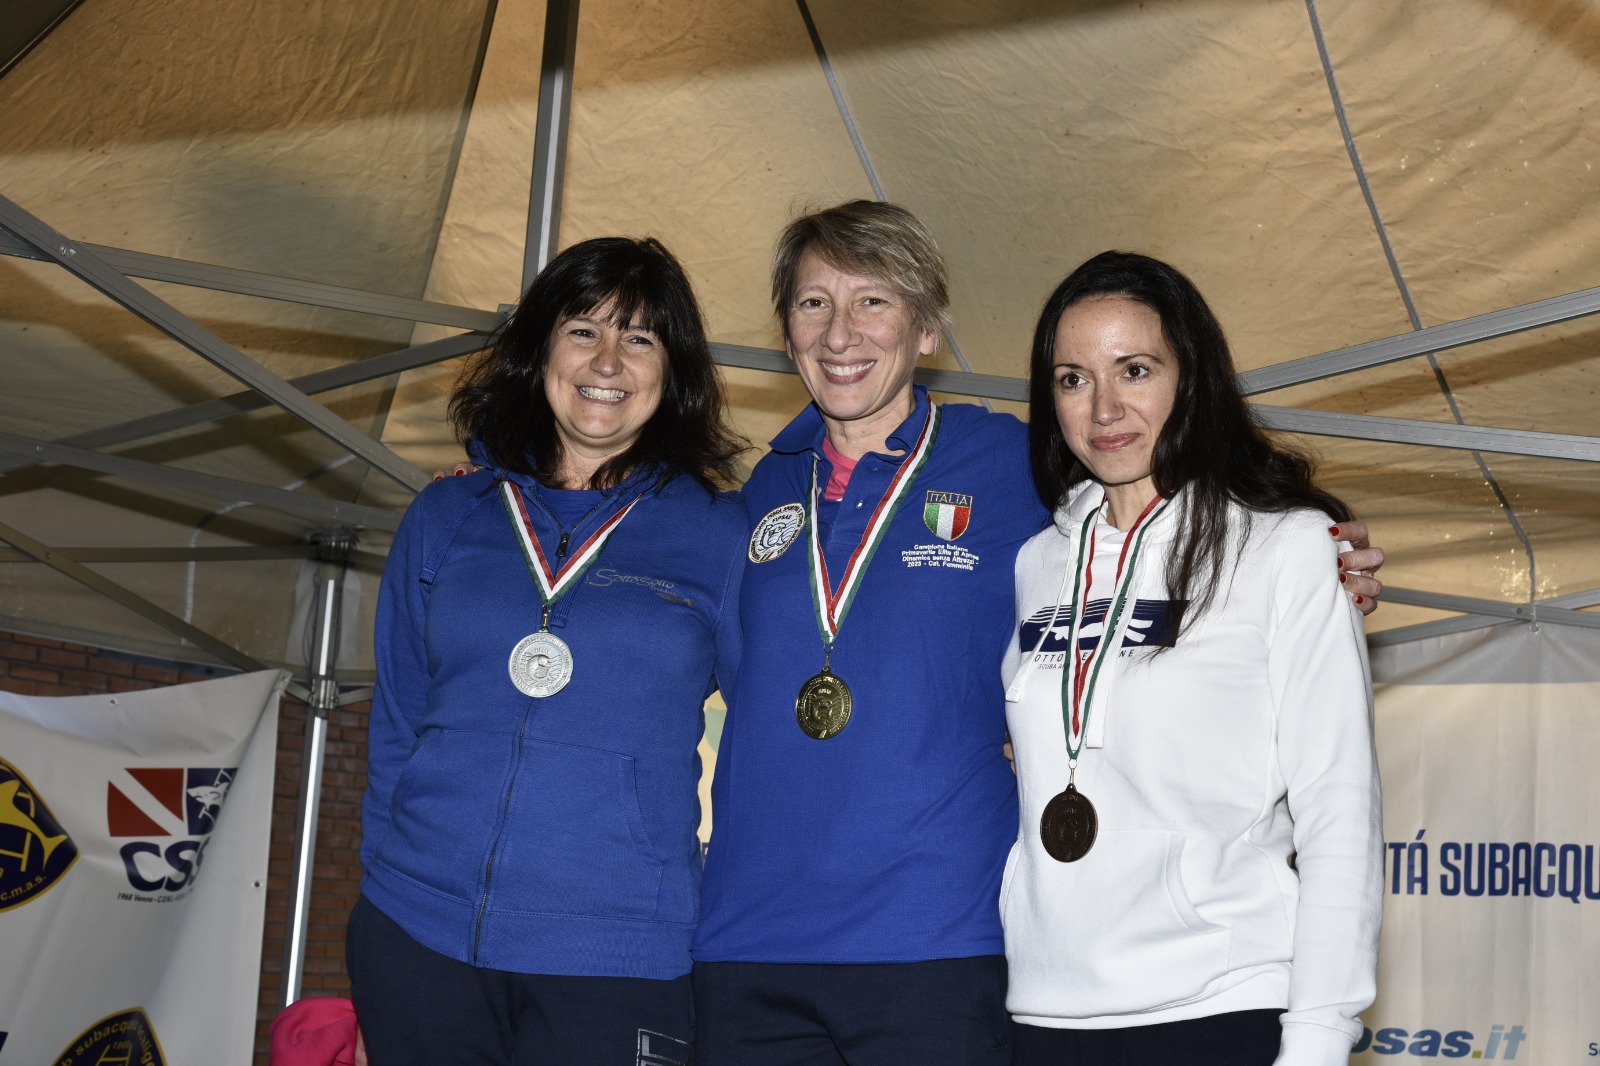 Bregonzio Rodda Nebuloni podio DNF femminile